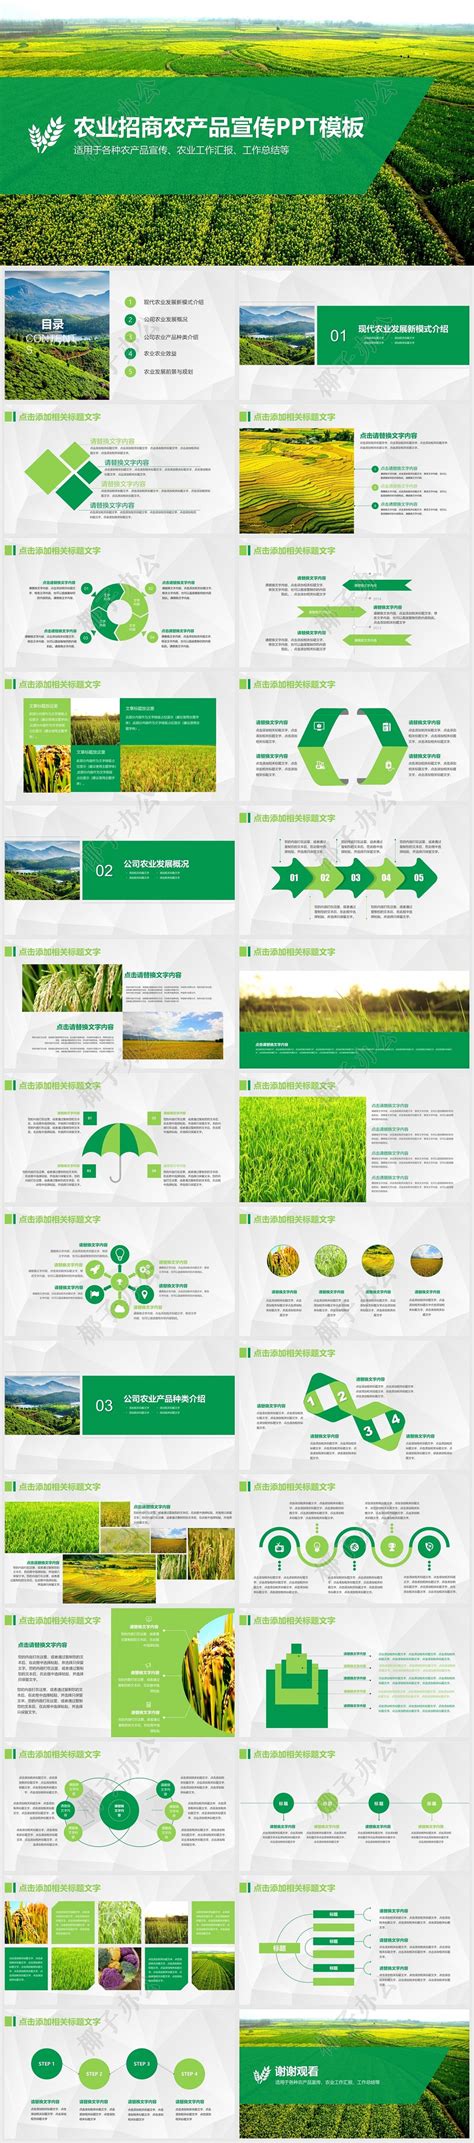 绿色生态农业招商农产品宣传PPT模板下载 - 觅知网